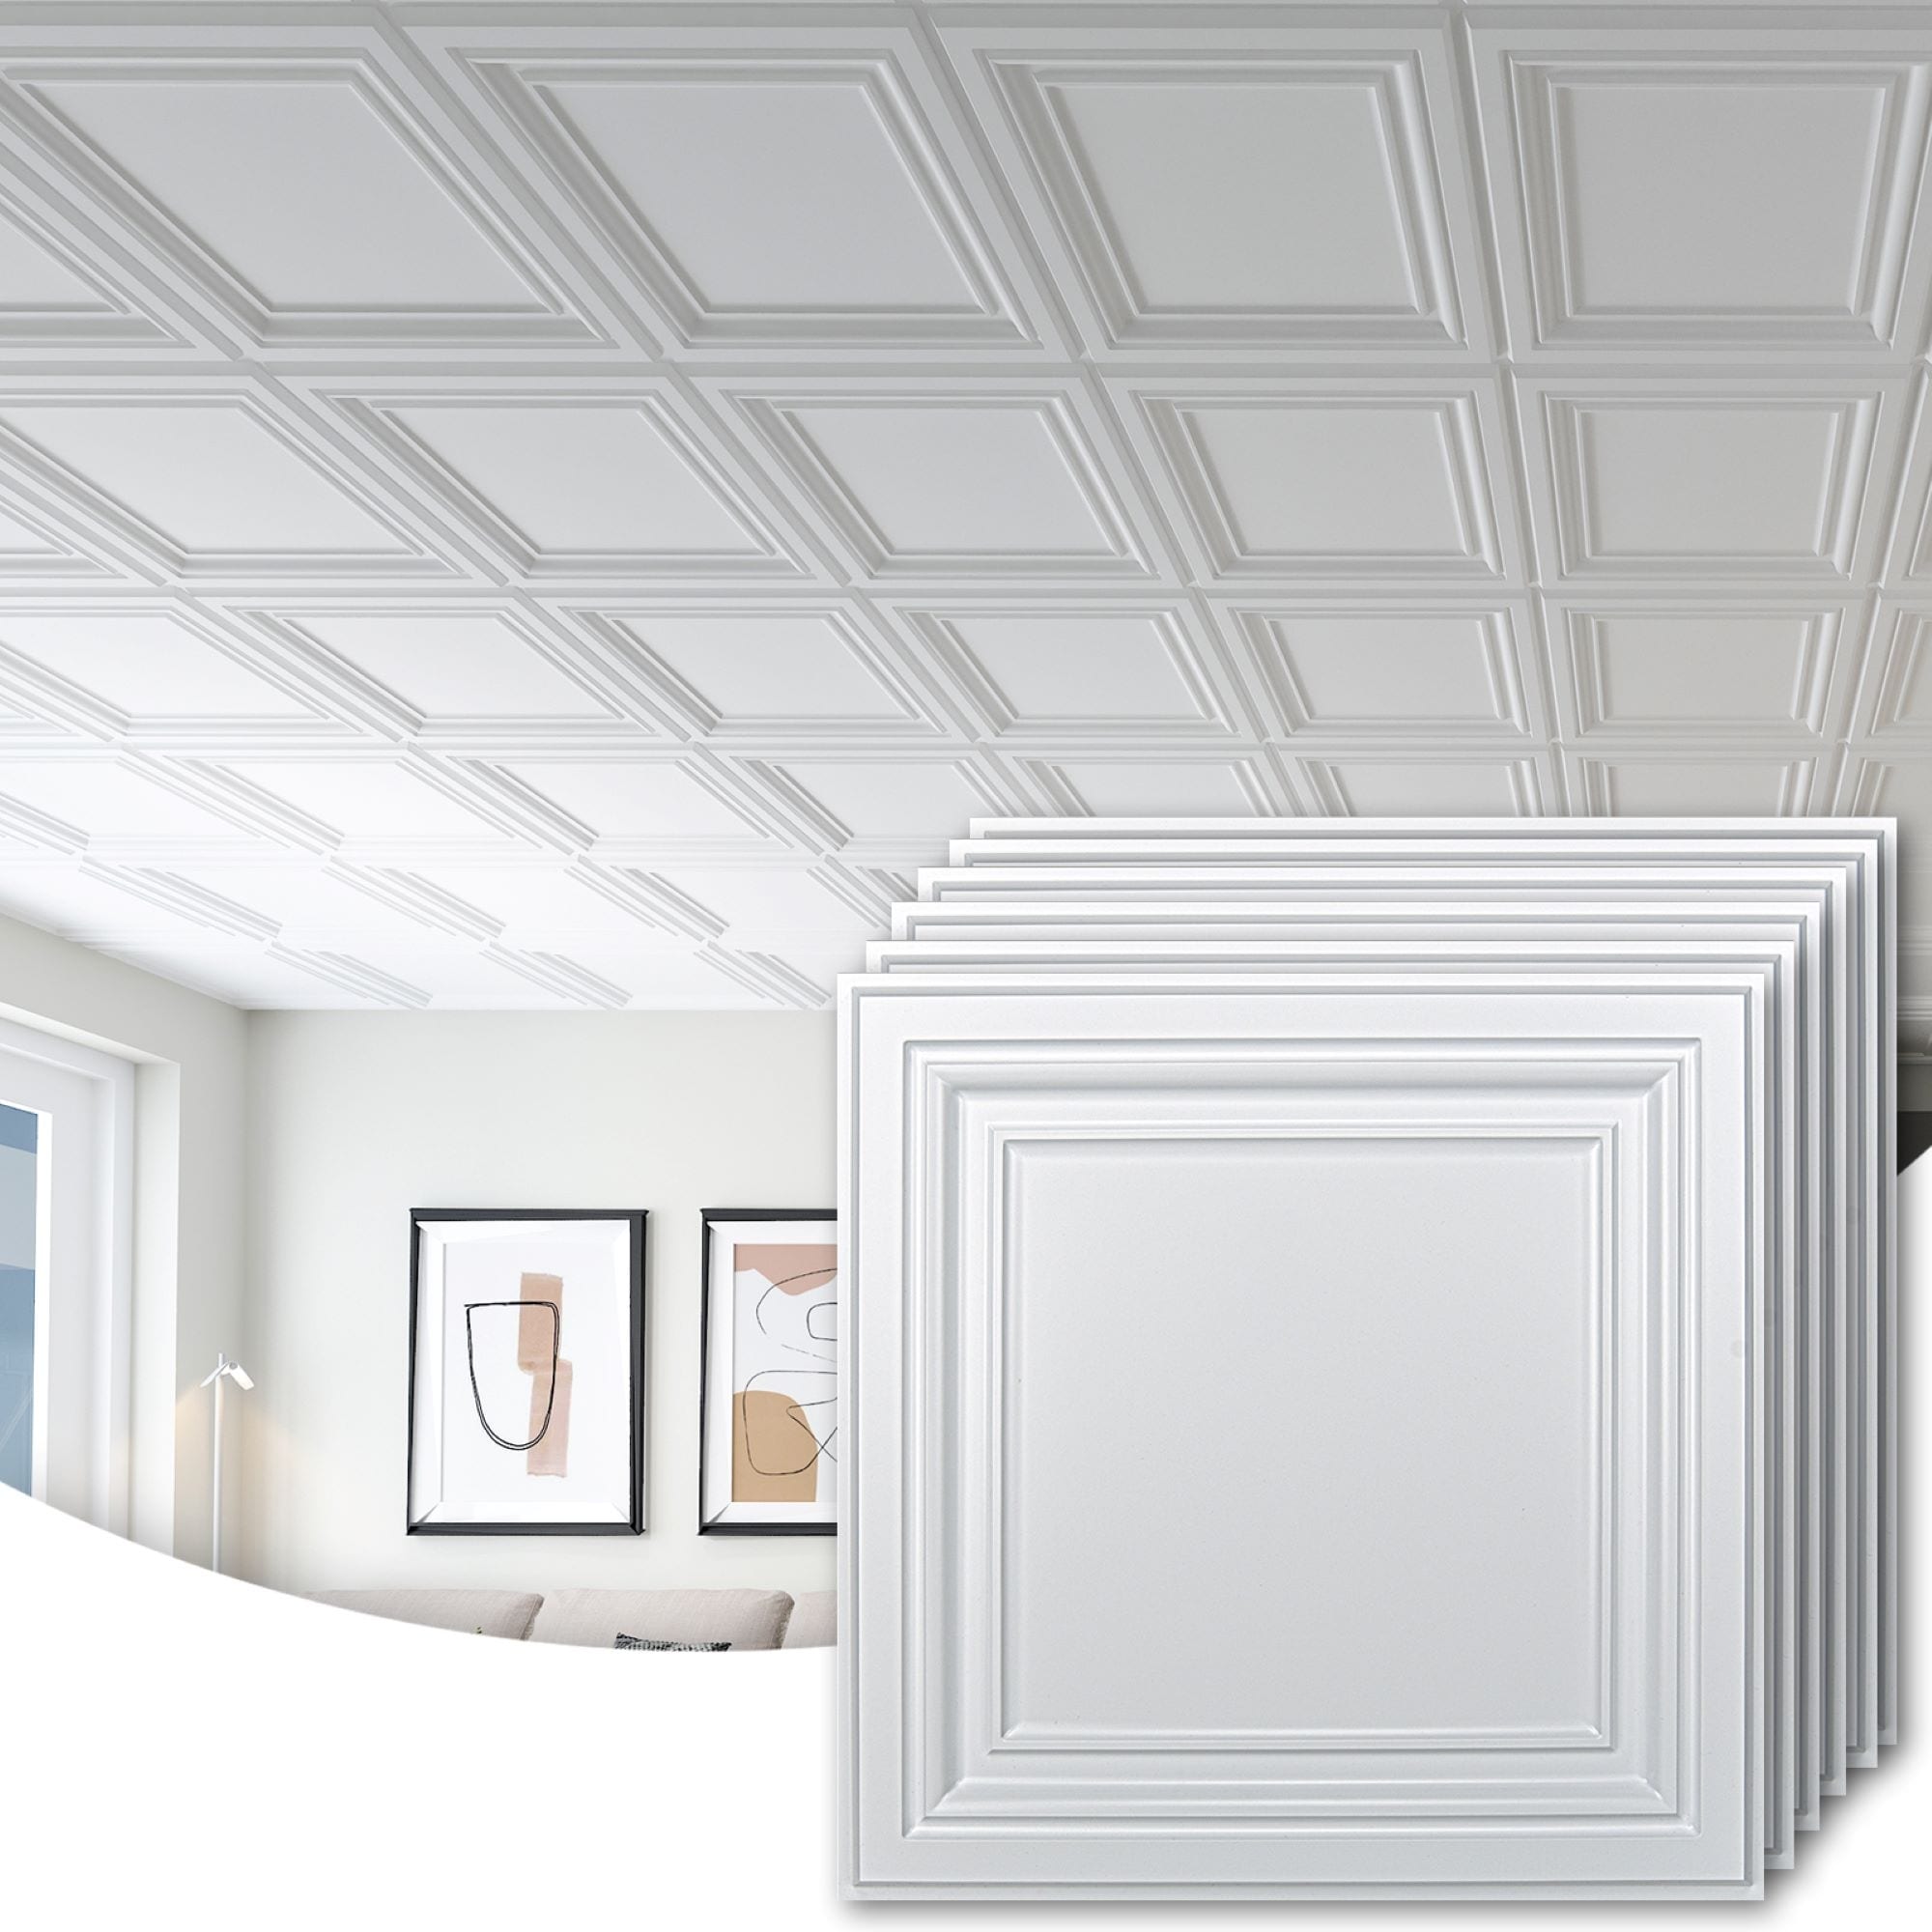 Art3d 2x2 PVC Decorative Suspended Ceiling Tiles,Glue-up Ceiling ...